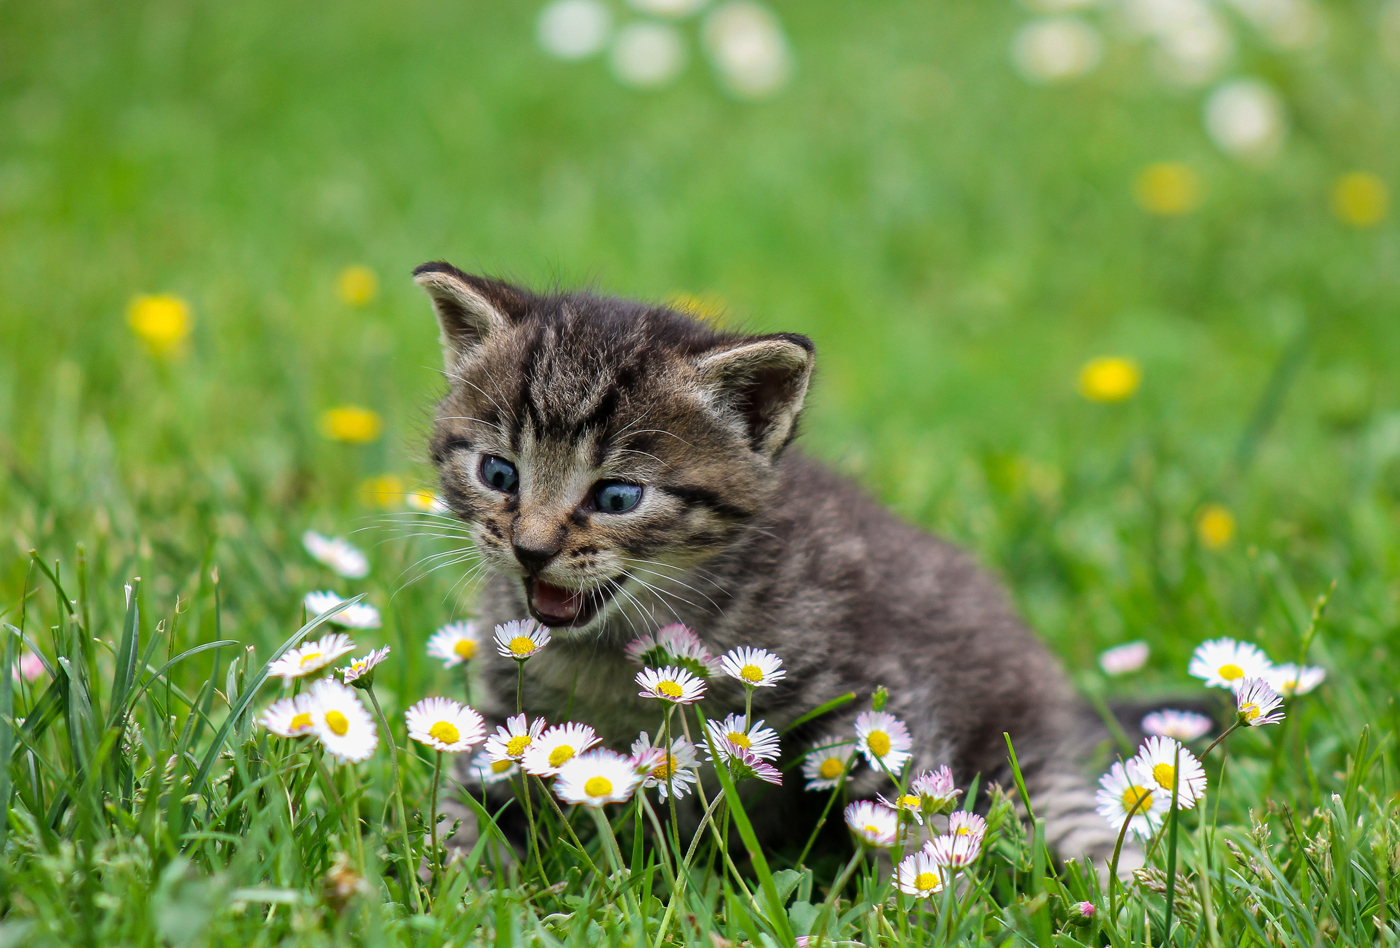 A kitten in a grassy garden investigation some daisies